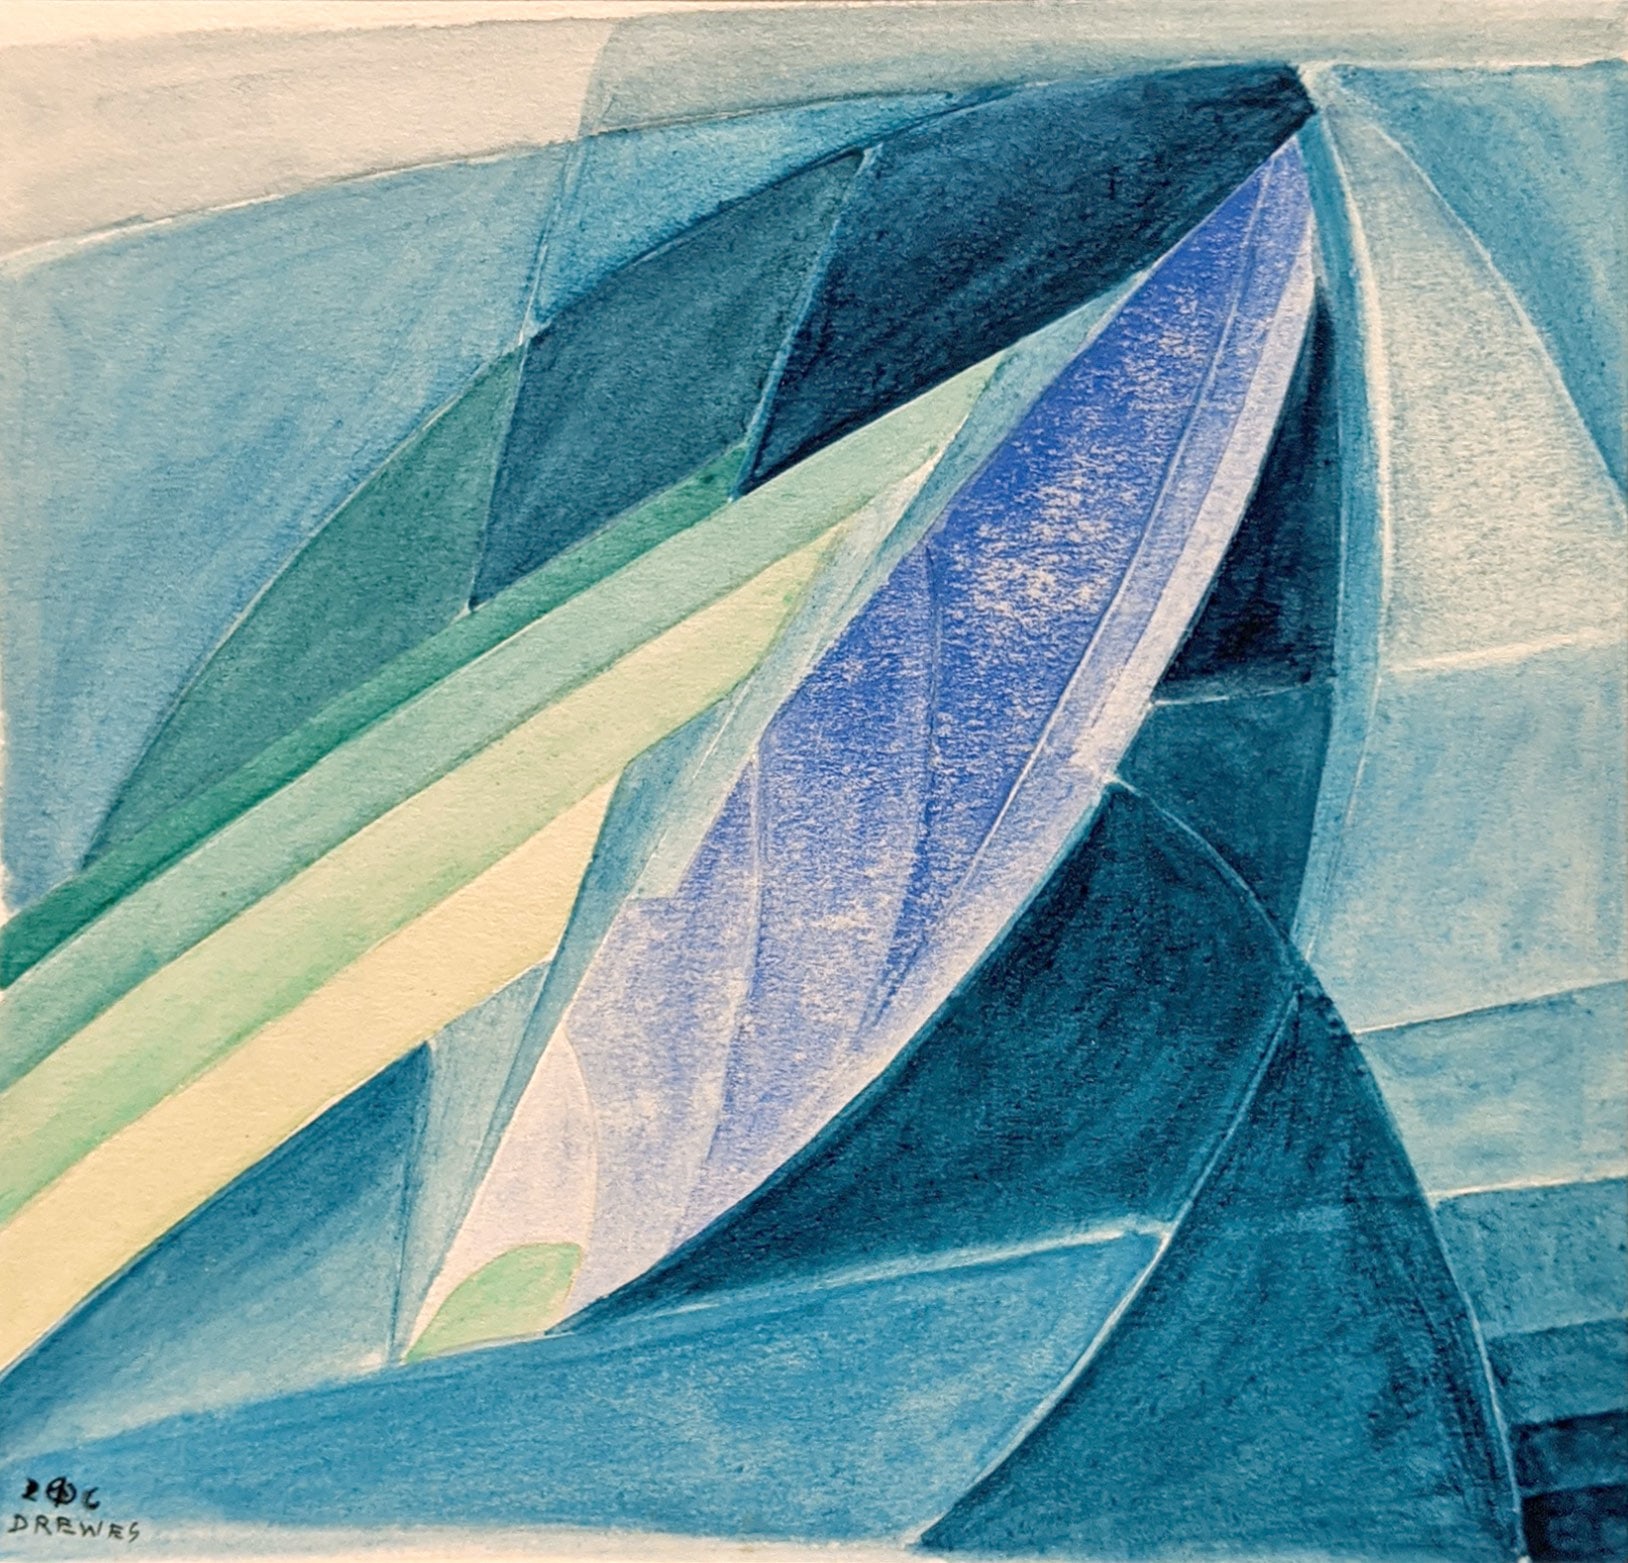 WERNER DREWES (1899-1985), Enfolding Light - Mural Design, 1926